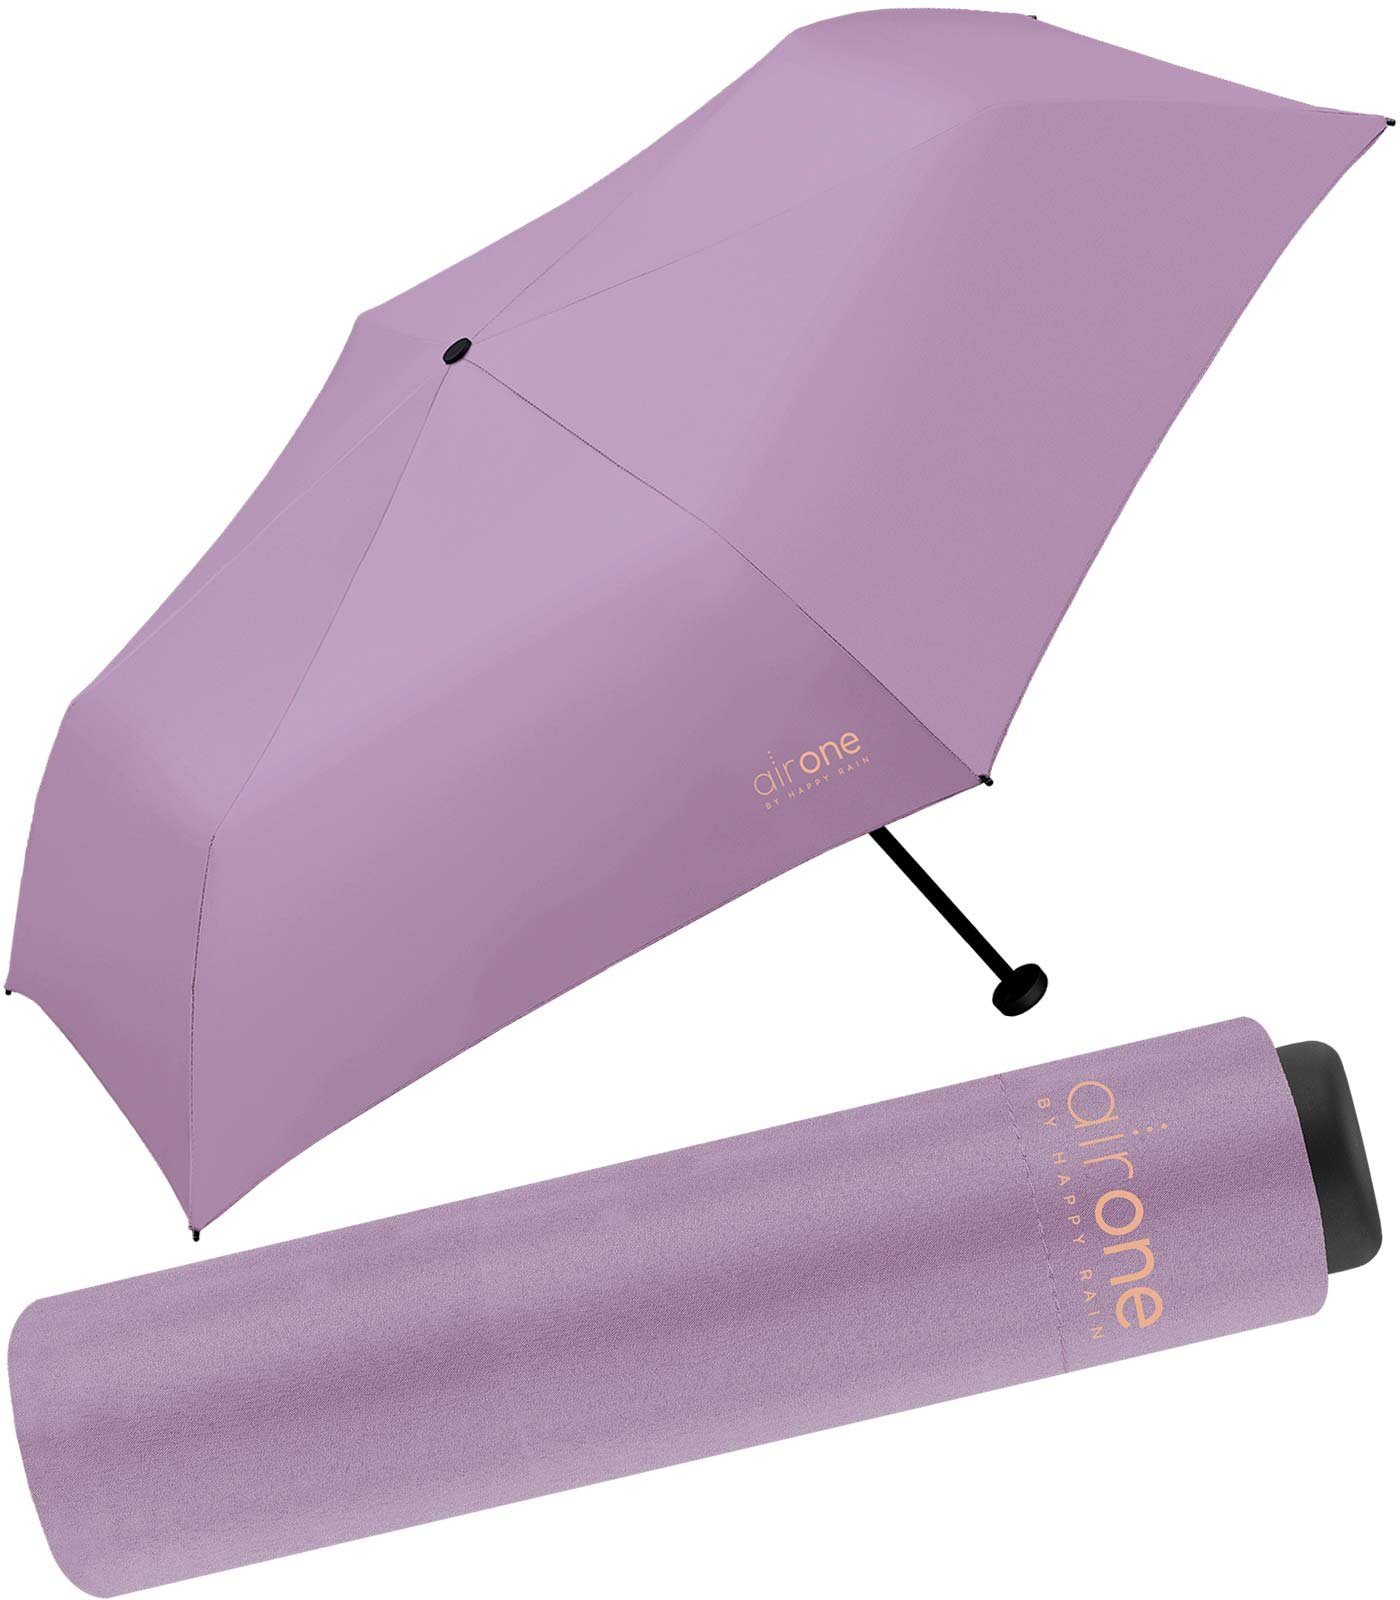 HAPPY RAIN Taschenregenschirm Air One - 99 Gramm Mini-Schirm superleicht, leichtester Minischirm - perfekt für Untewegs